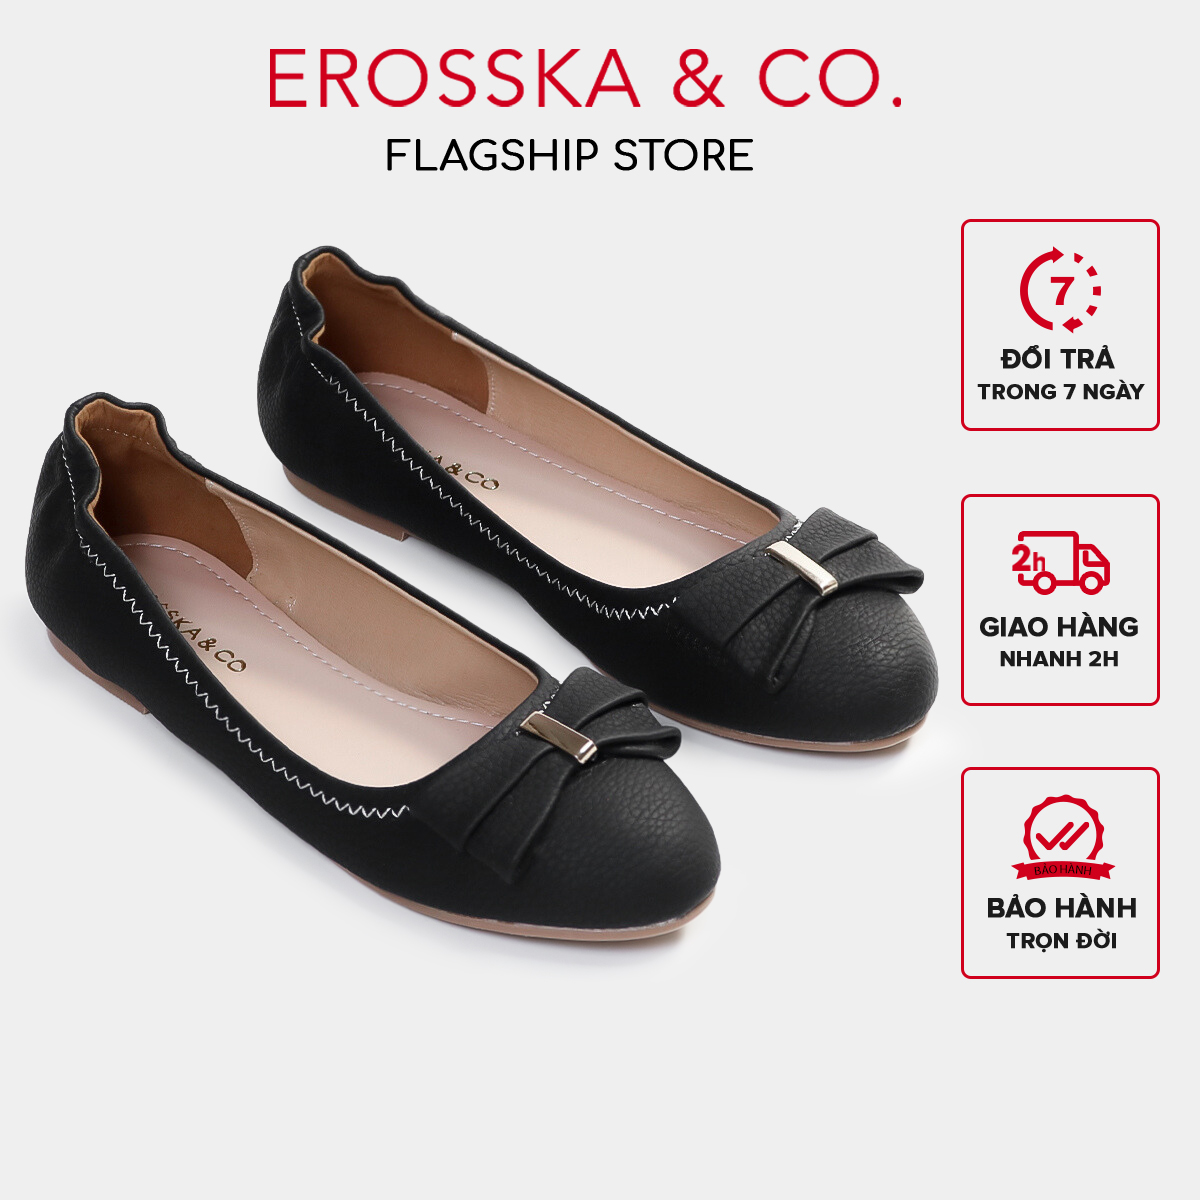 Erosska - Giày búp bê nữ đế bệt mũi tròn đính nơ xinh xắn - EF020